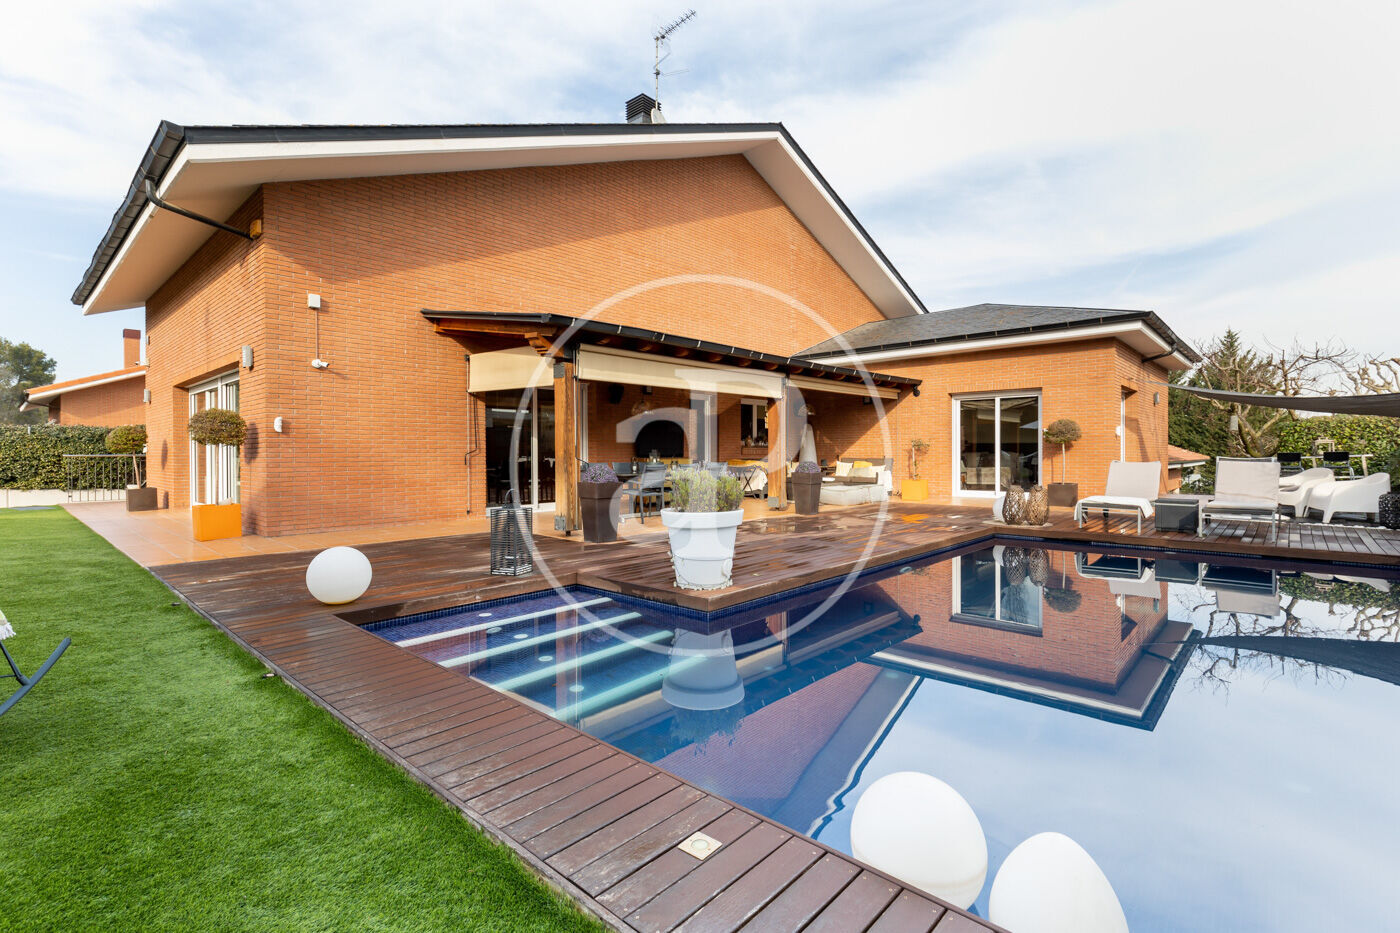 Casa en venta con jardín y piscina en Sant Quirze del Vallés.